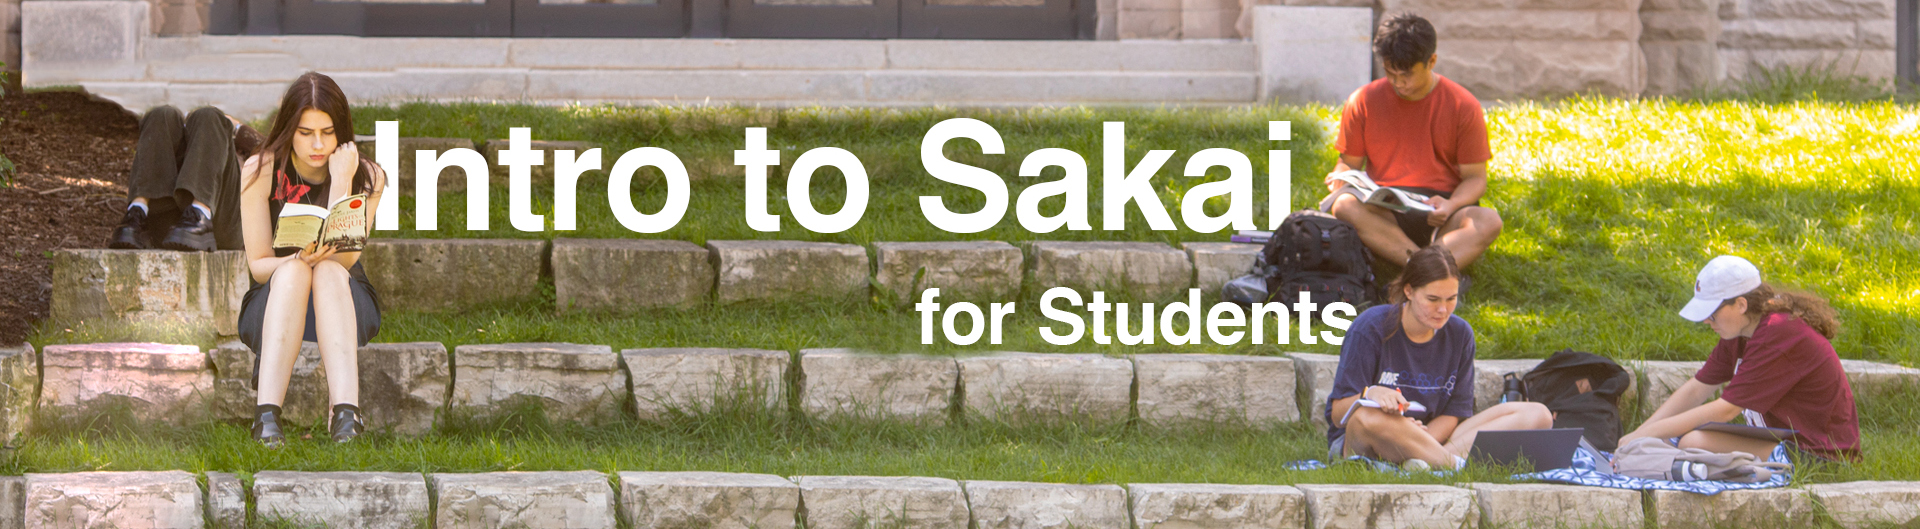 Intro to Sakai for Students